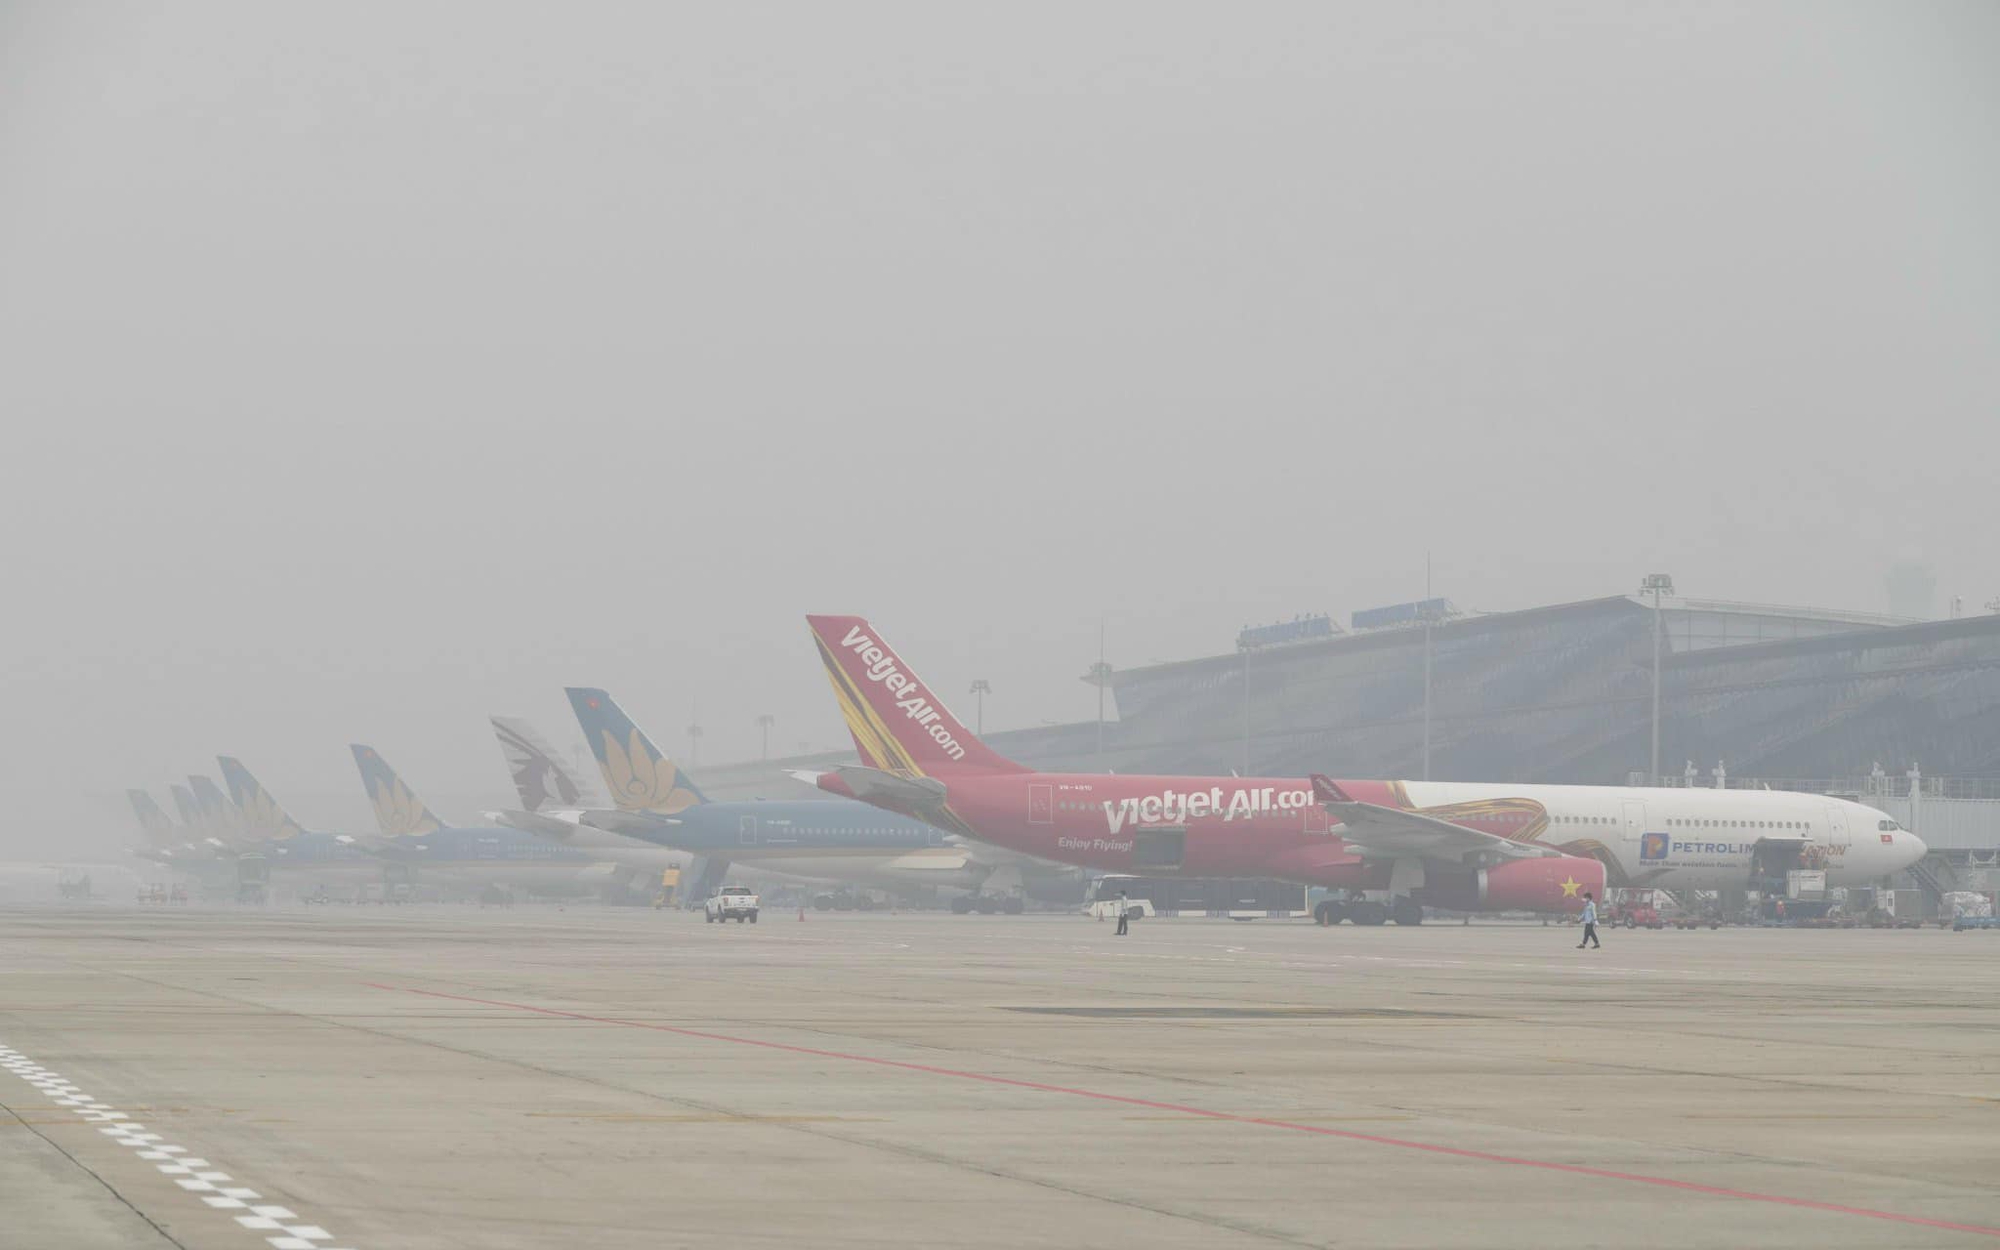 Hàng chục chuyến bay không thể hạ cánh tại Nội Bài